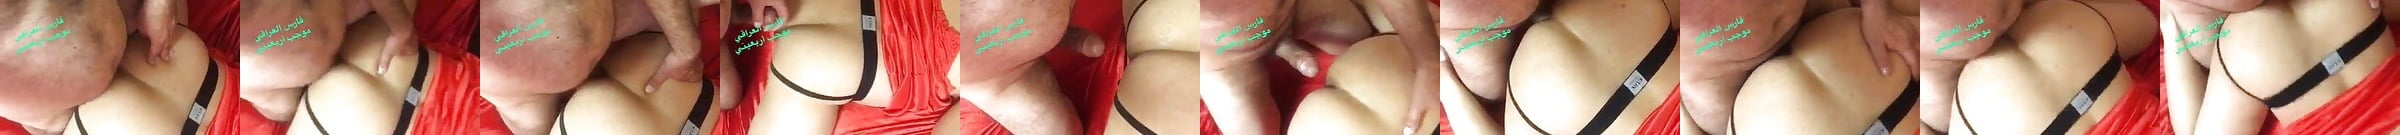 Syrian Arab Bear Daddy Fucking Raw Free Shemale Hd Porn